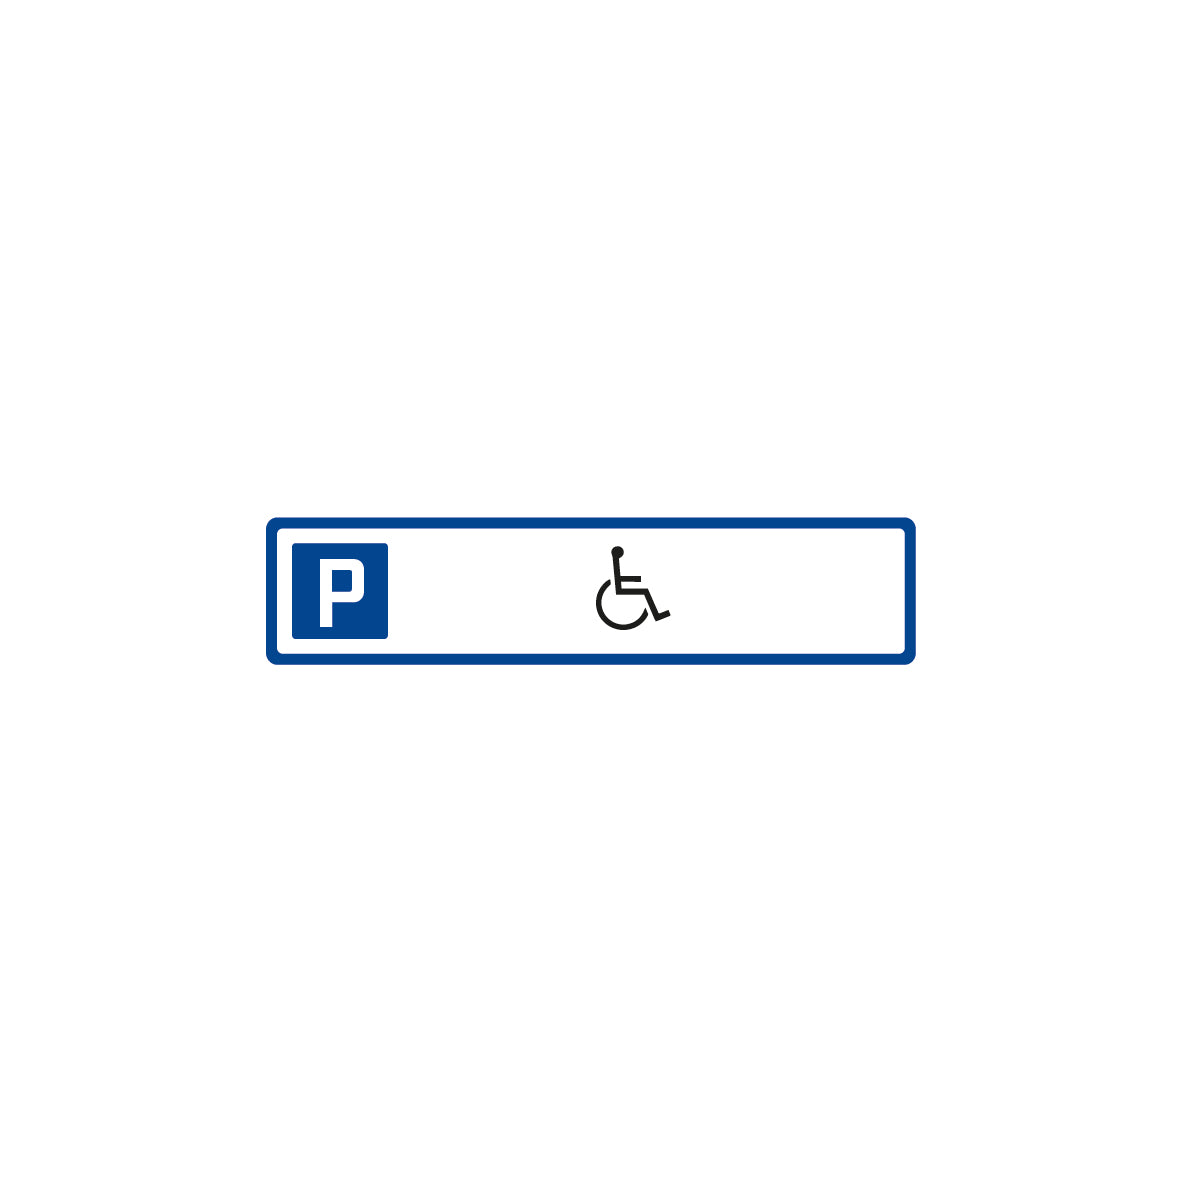 Parkplatzschild 7.0053 M1, 52 x 11 cm, mit Symbol: Behinderte